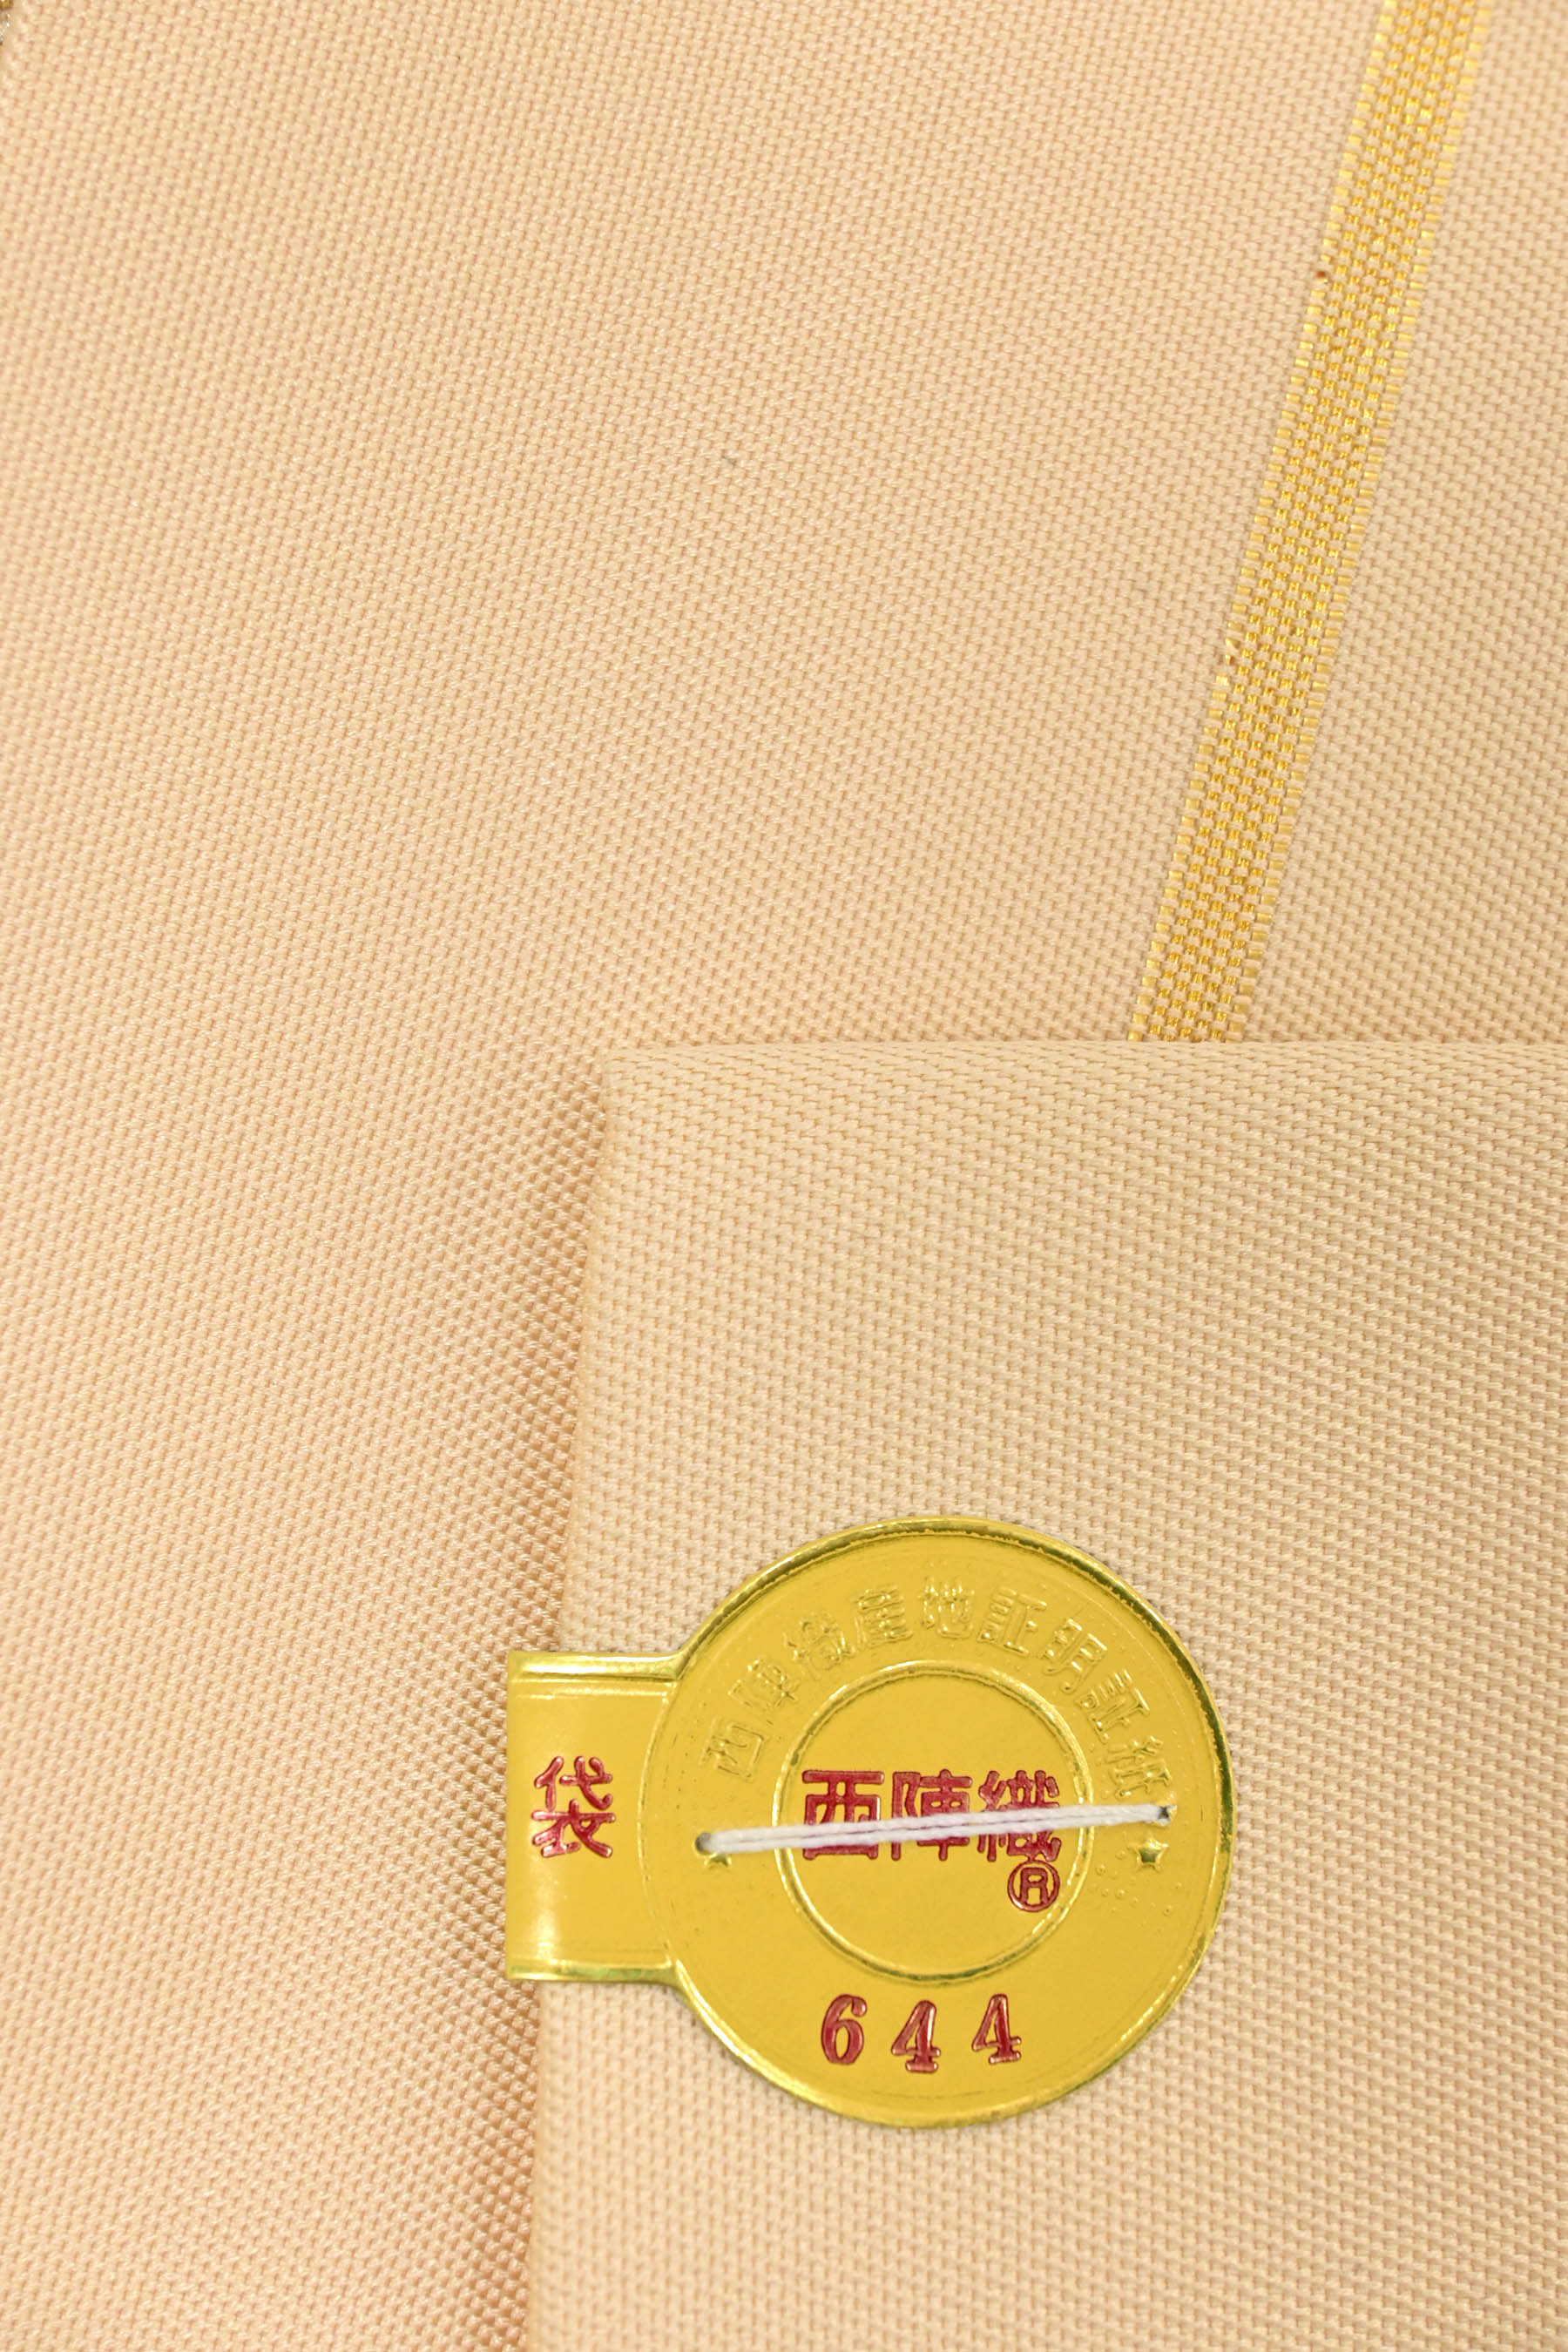 本袋帯【たつむら】龍村美術織物 対壽楽鳥 正絹 六通柄 橙色 金糸 振袖にも⭐︎